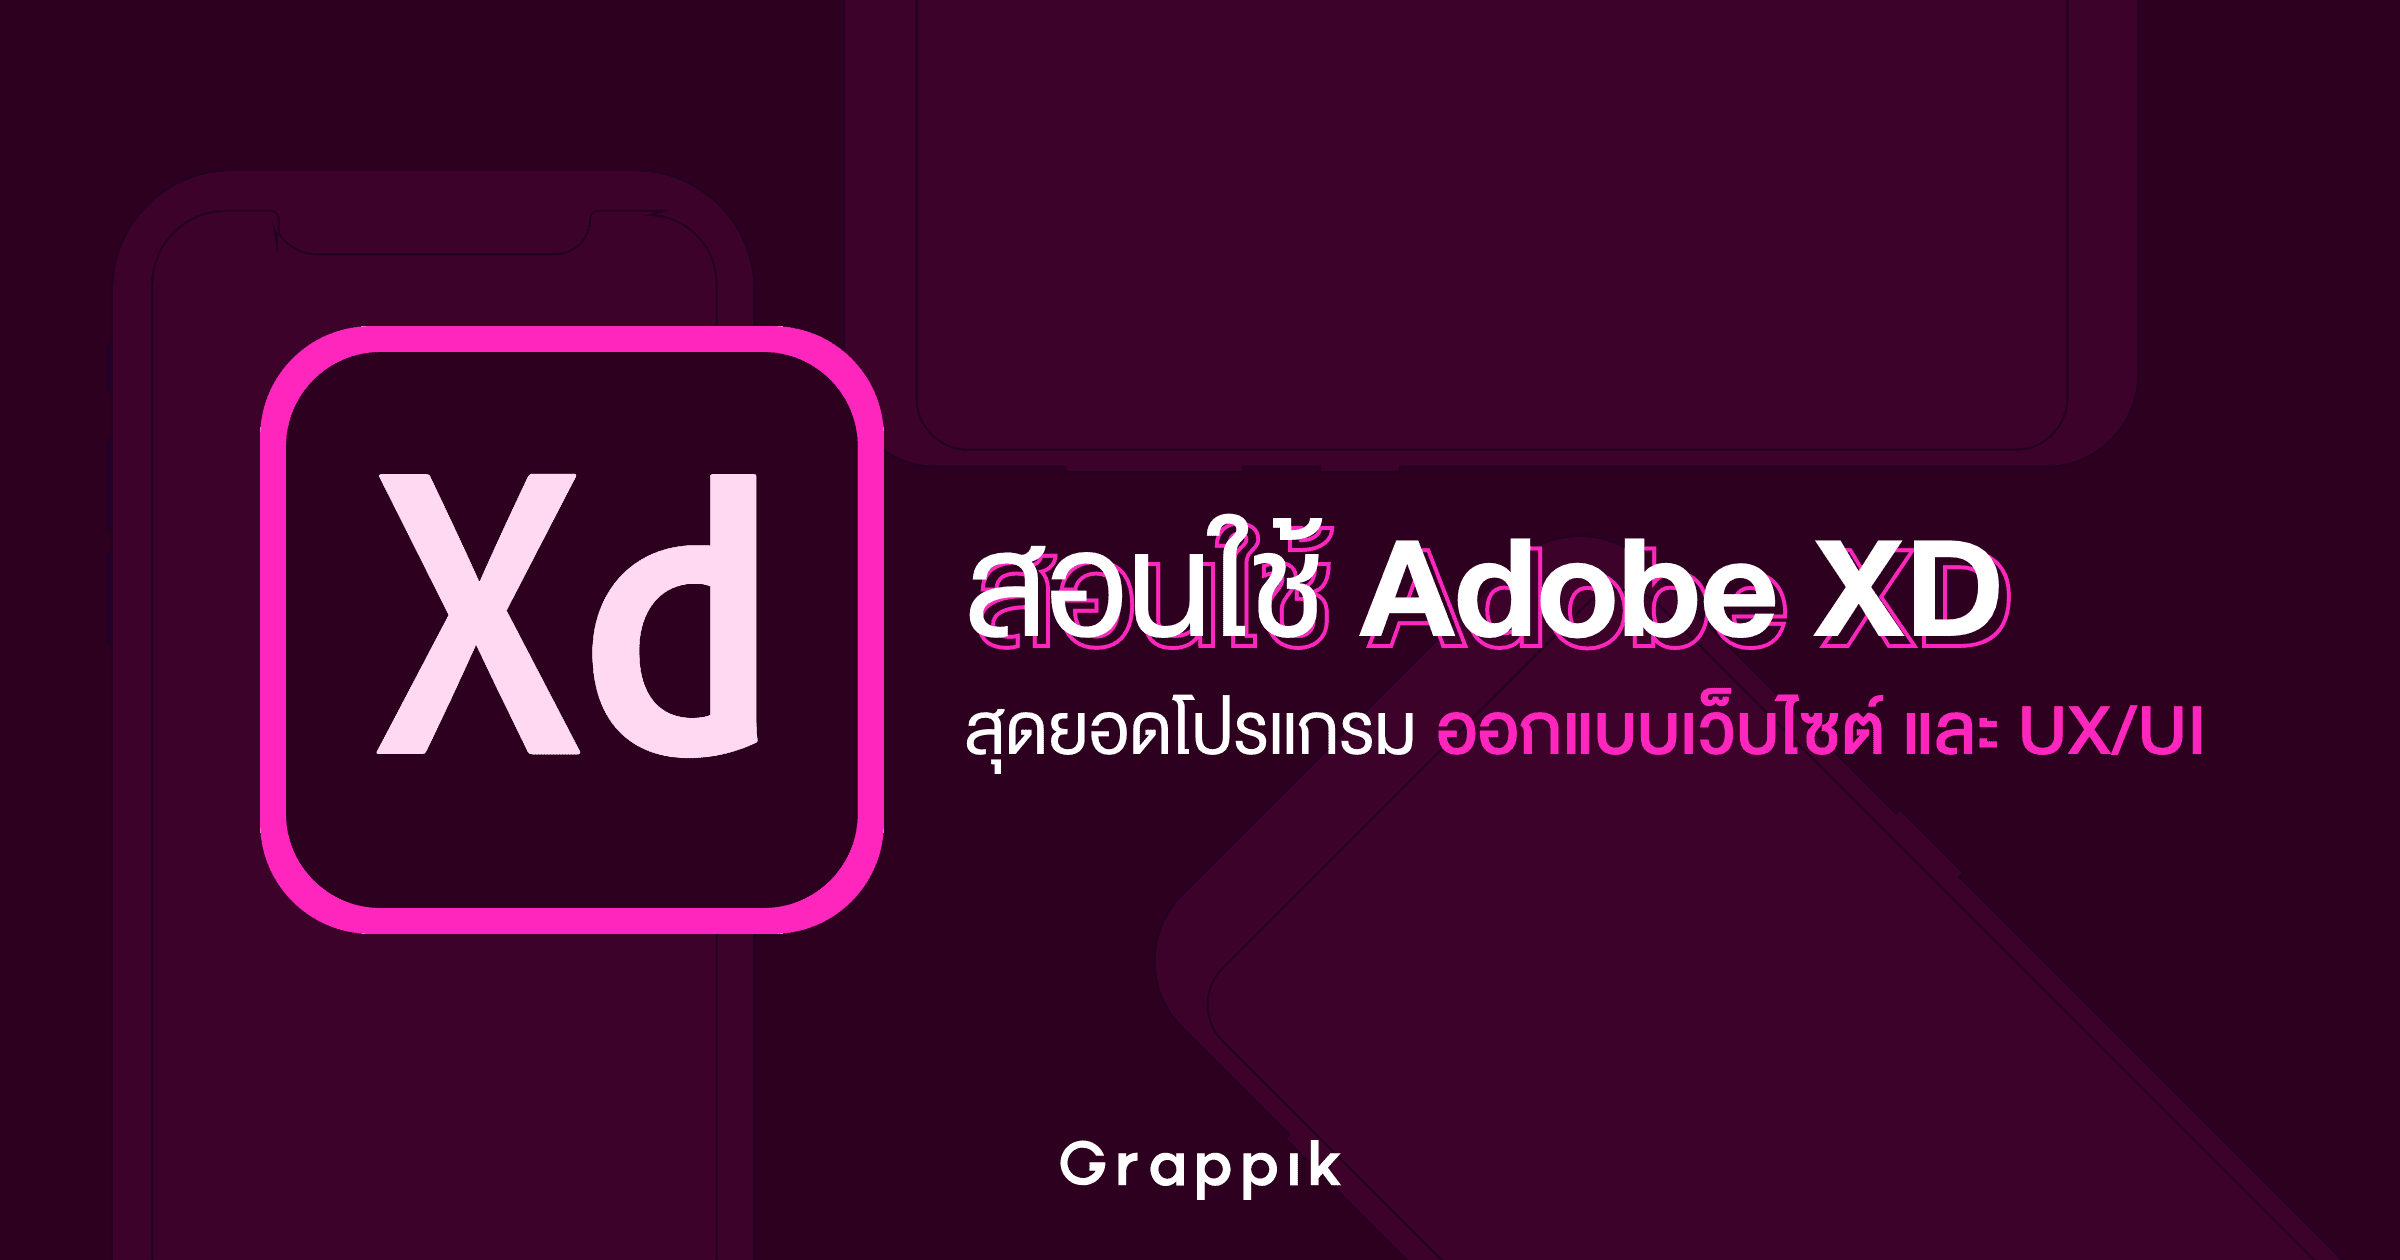 สอนใช้ Adobe Xd สุดยอดโปรแกรมออกแบบเว็บไซต์ และ Ux/Ui